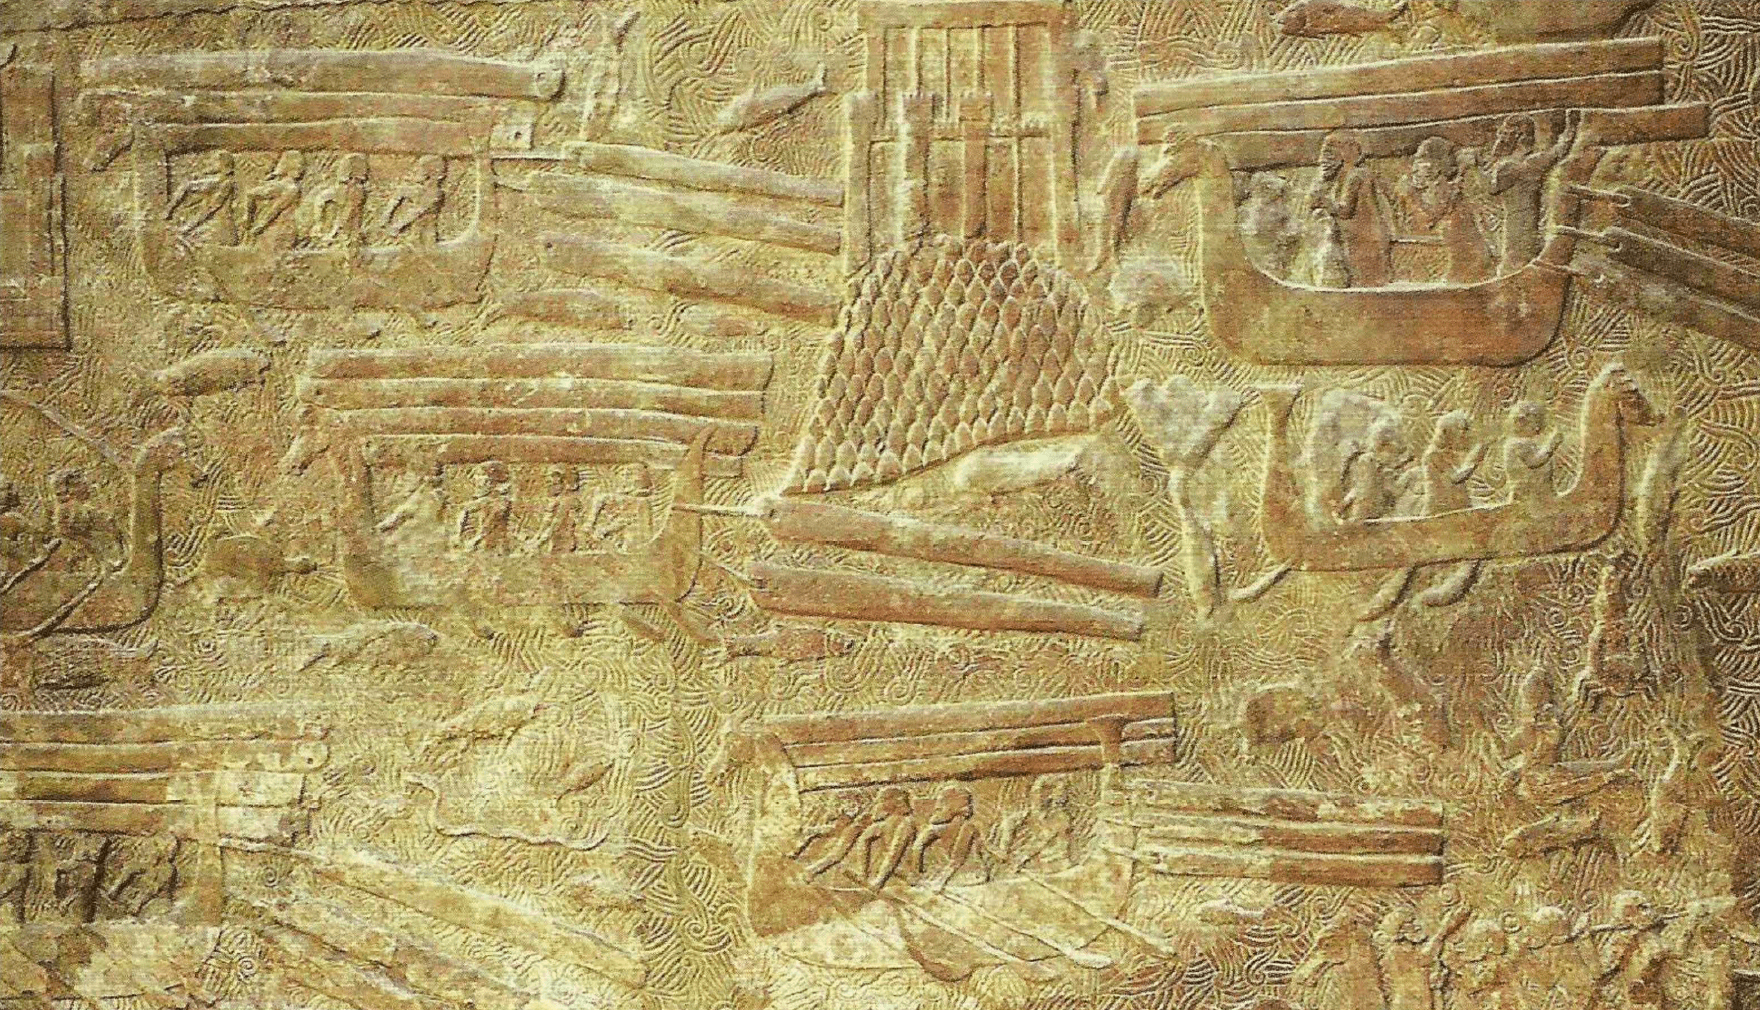 trabalhadores assírios sob o comando do rei Sargão